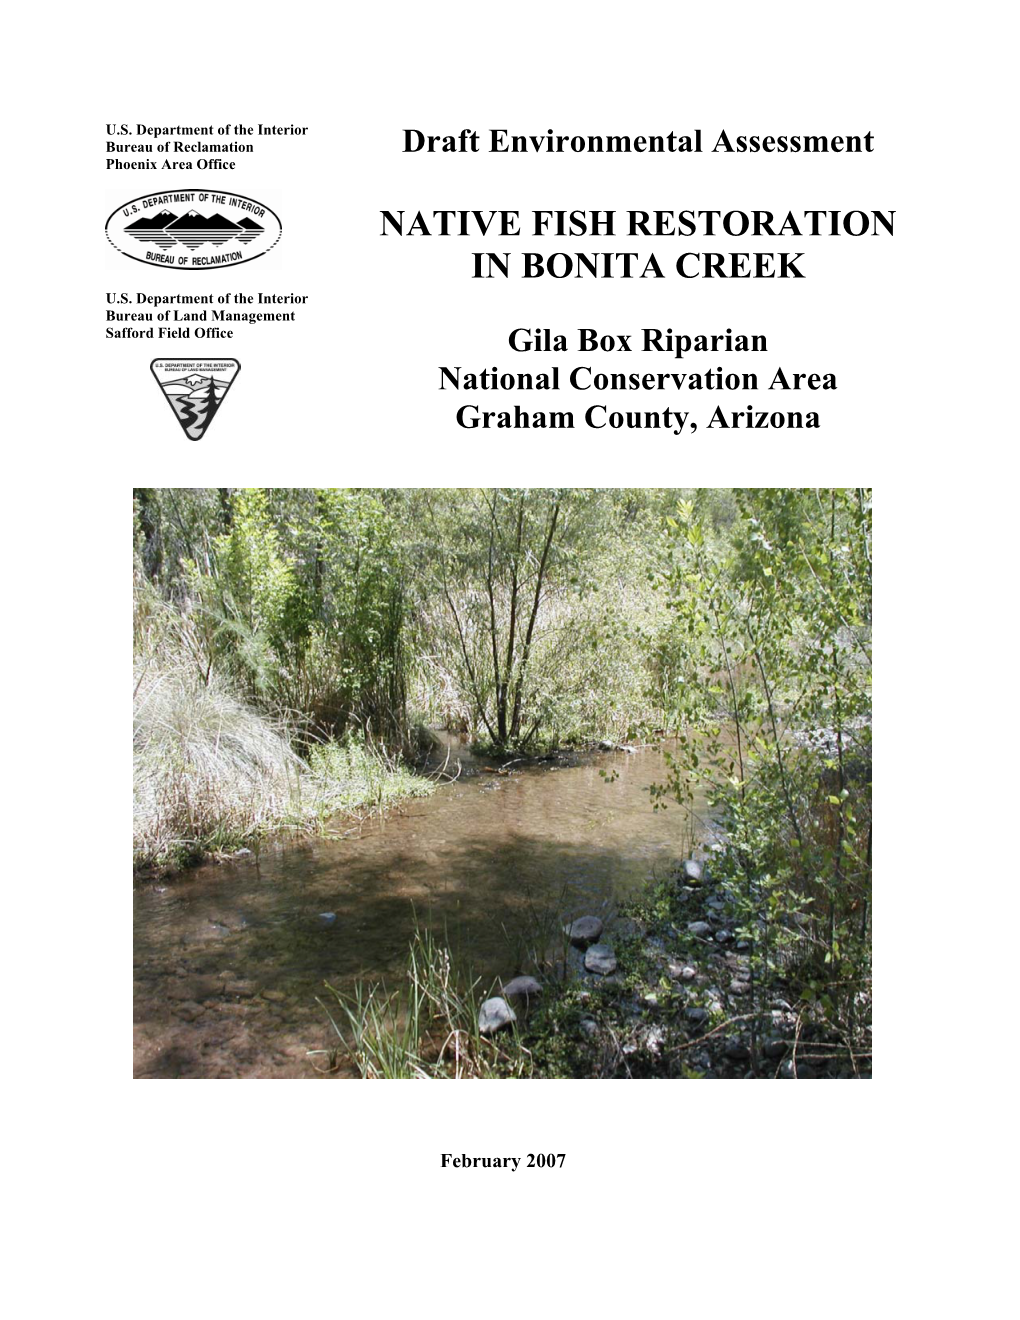 Native Fish Restoration in Bonita Creek